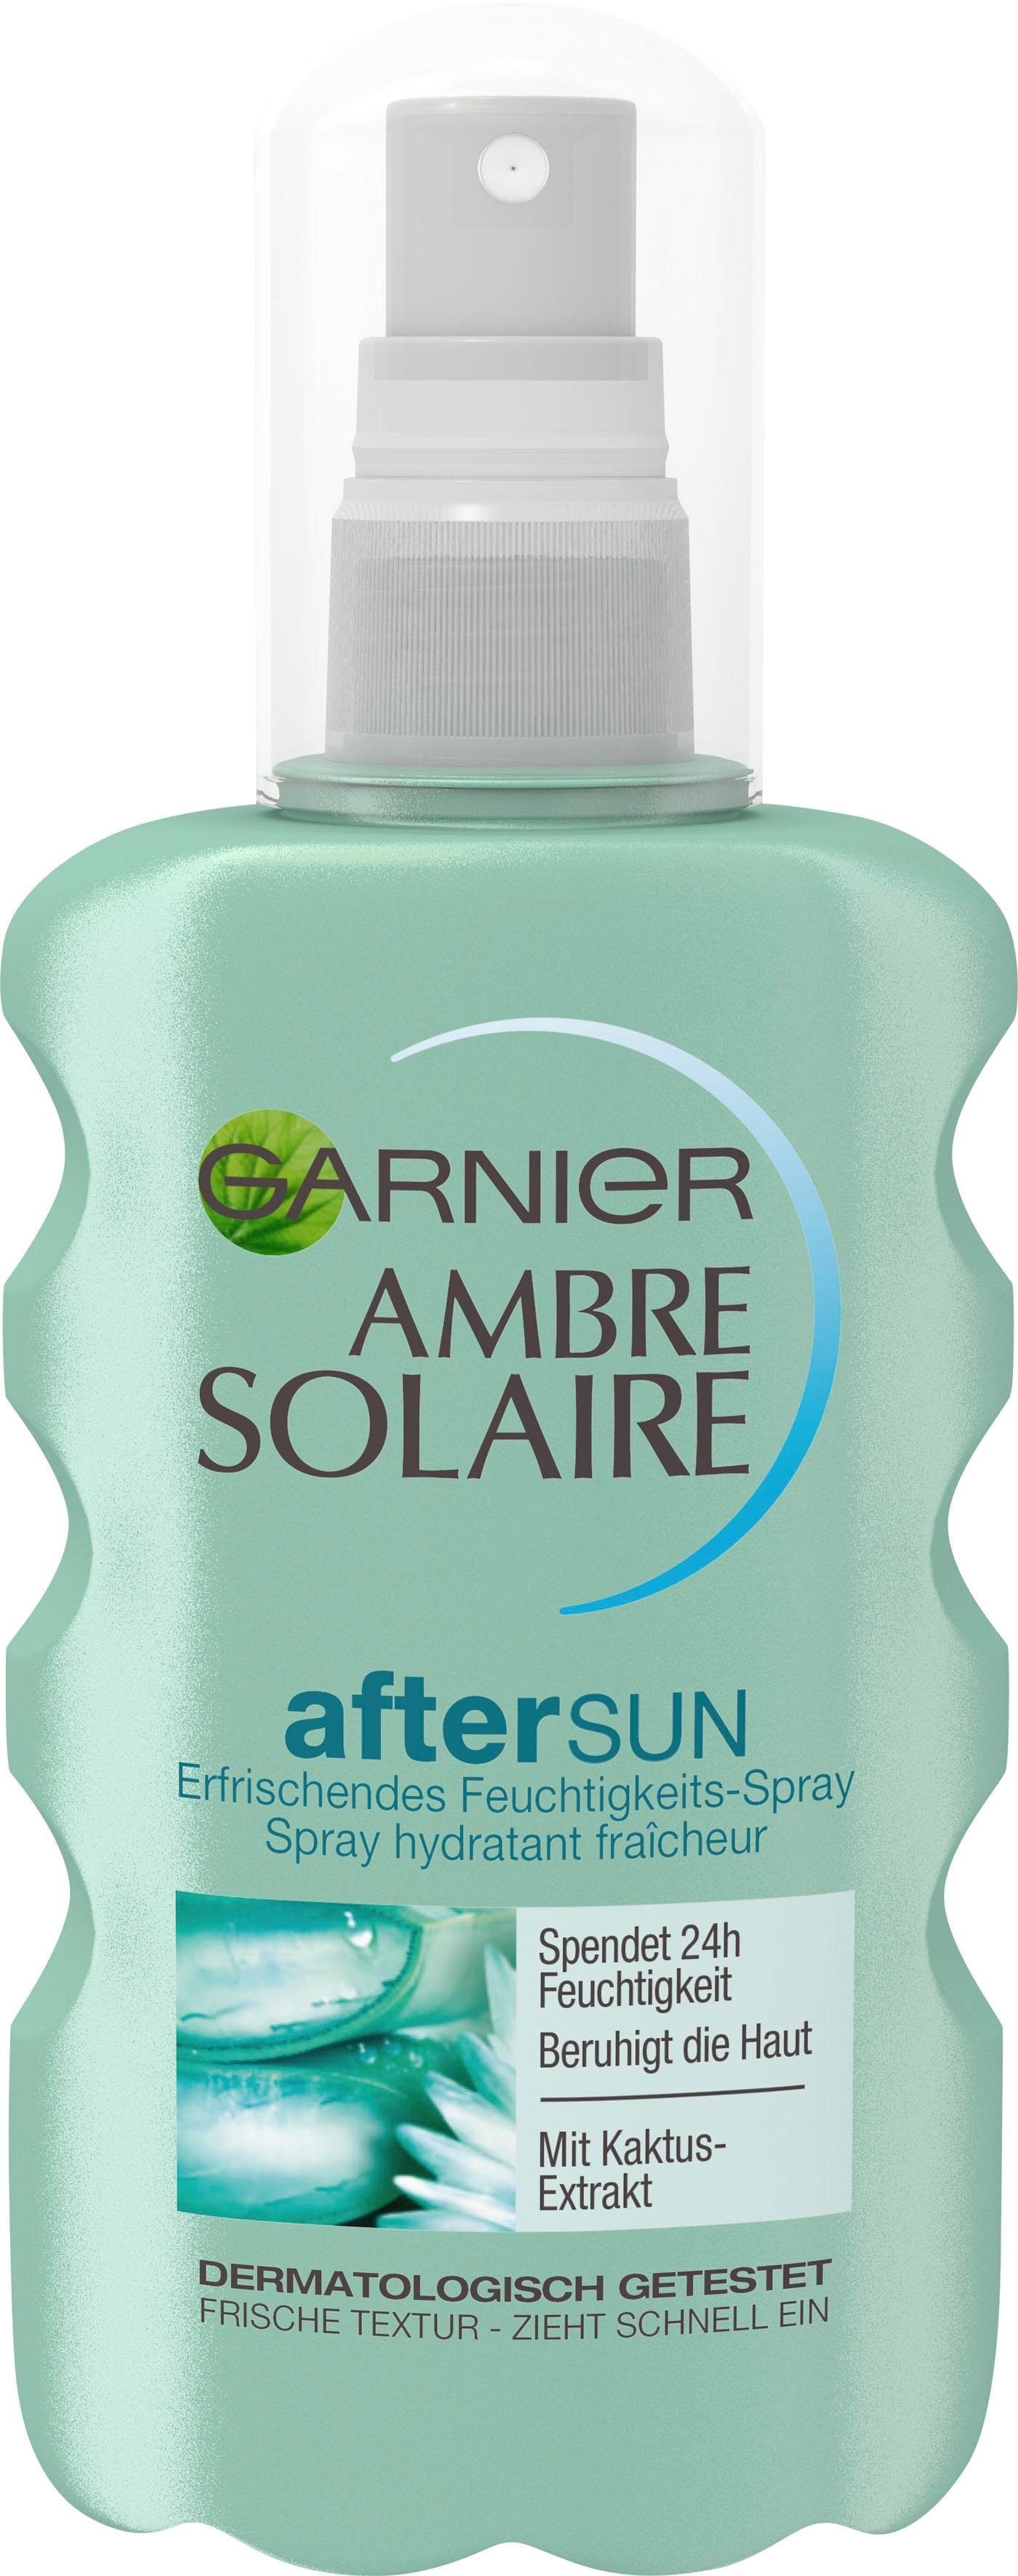 Solaire After mit Sun-Spray GARNIER Kaktus-Extrakt Feuchtigkeits-Après, Ambre